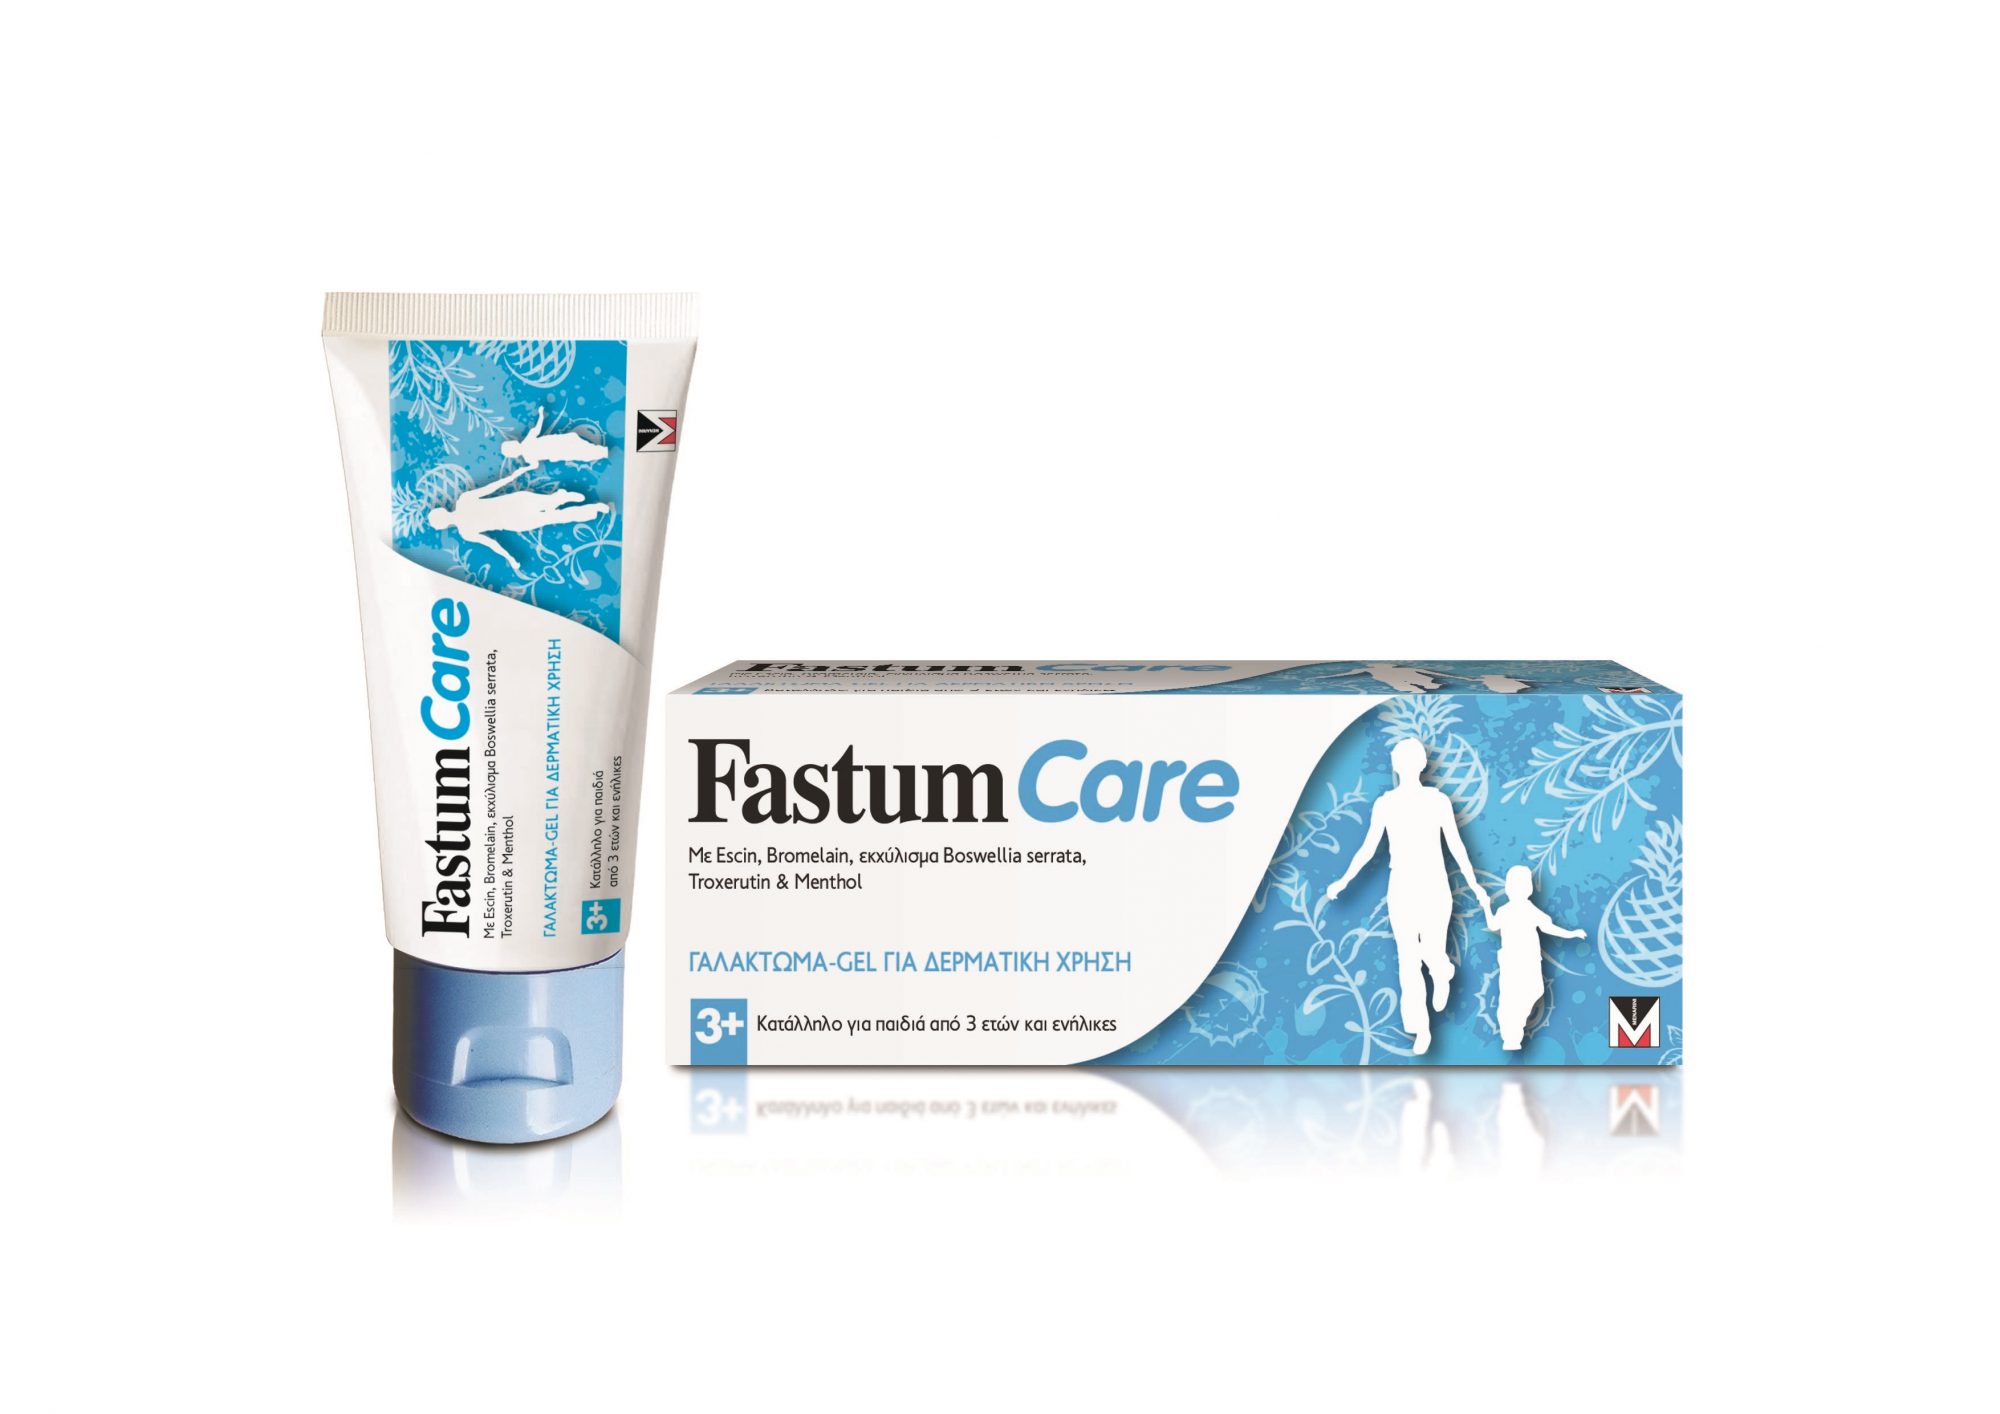 Ανακουφιστείτε από μελανιές και οιδήματα με το Fastum Care